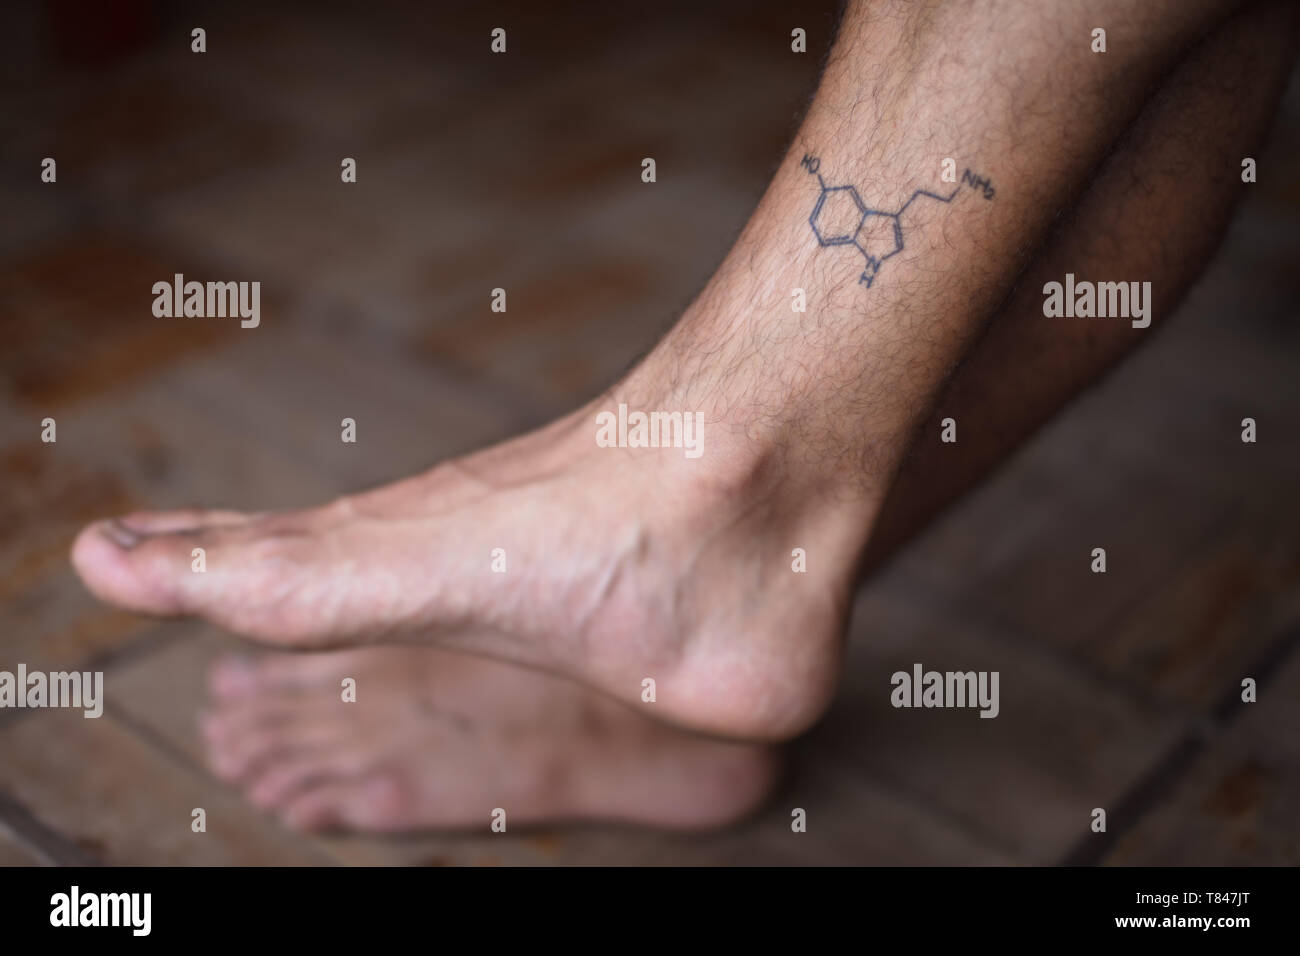 Molécule de tatouage sur la sérotonine shin de l'homme Banque D'Images